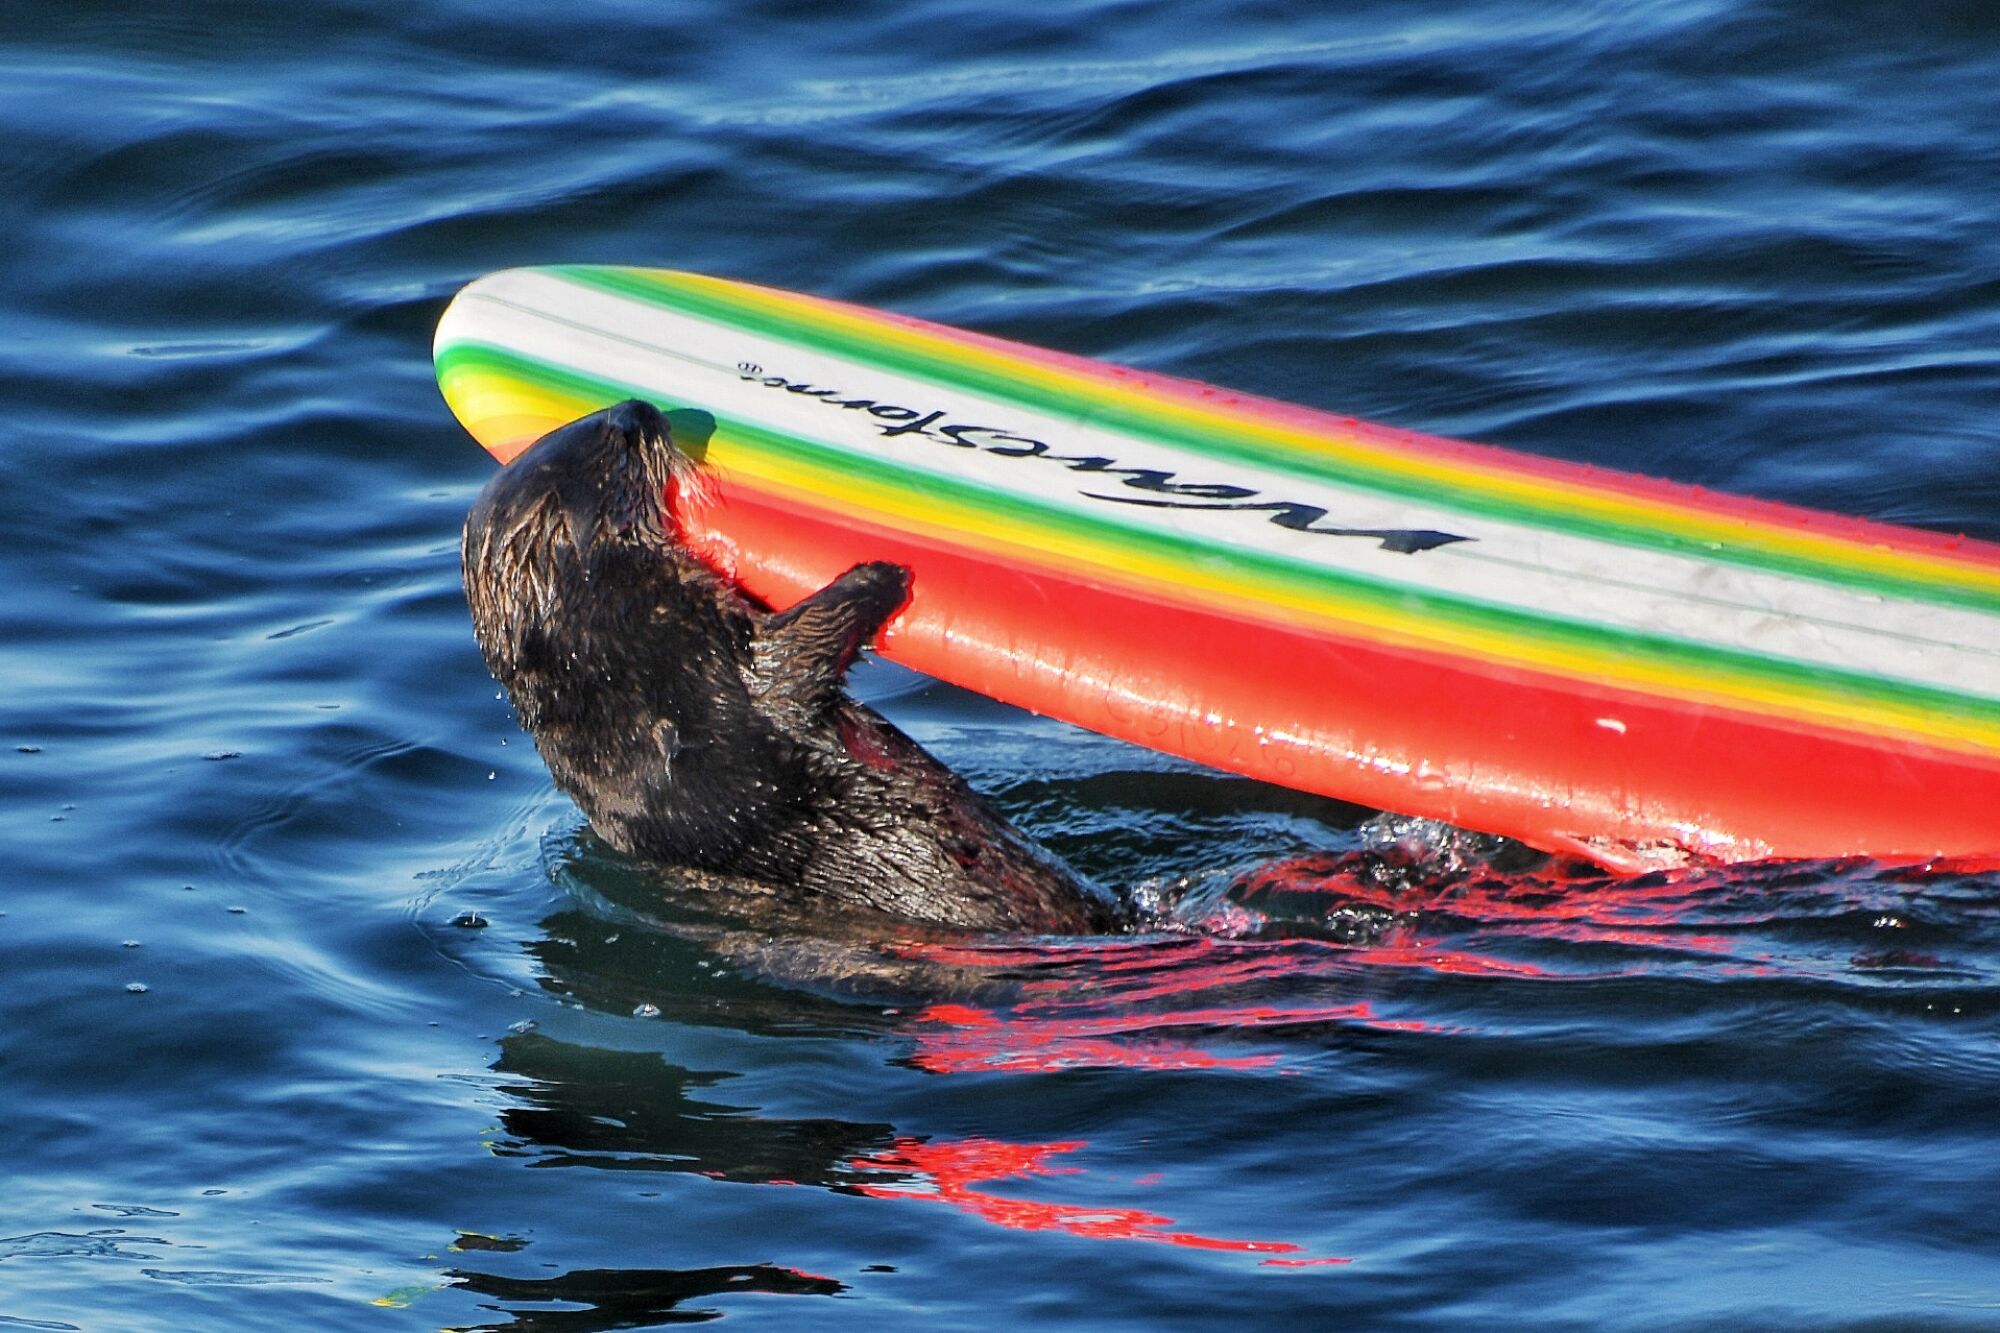 Ein Seeotter kaut auf einem orangefarbenen Surfbrett mit gelben, grünen und weißen Streifen